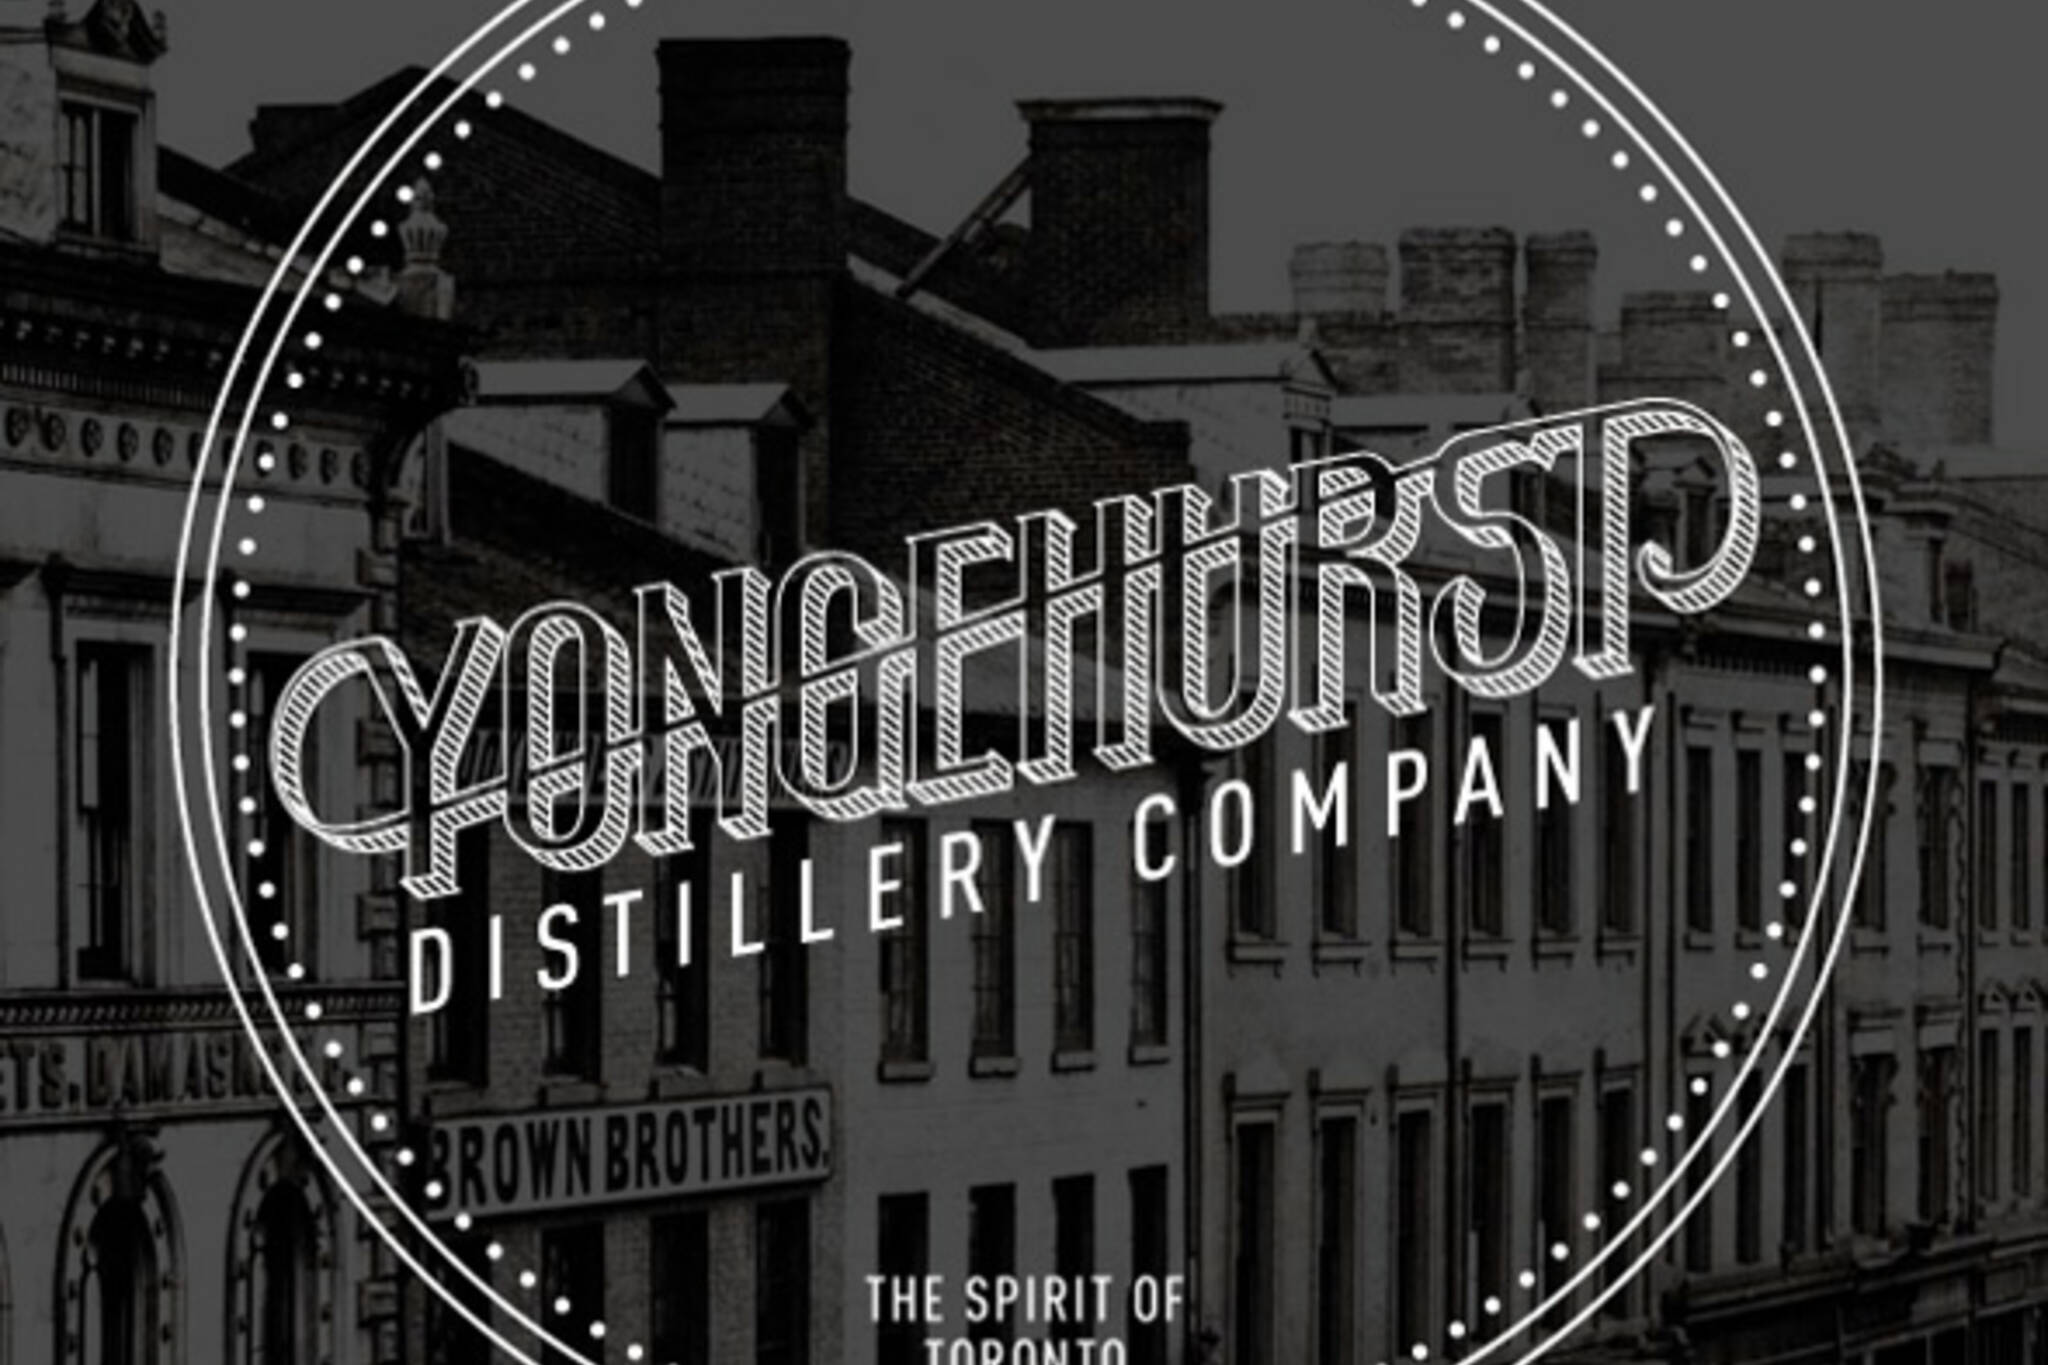 yongehurst distillery